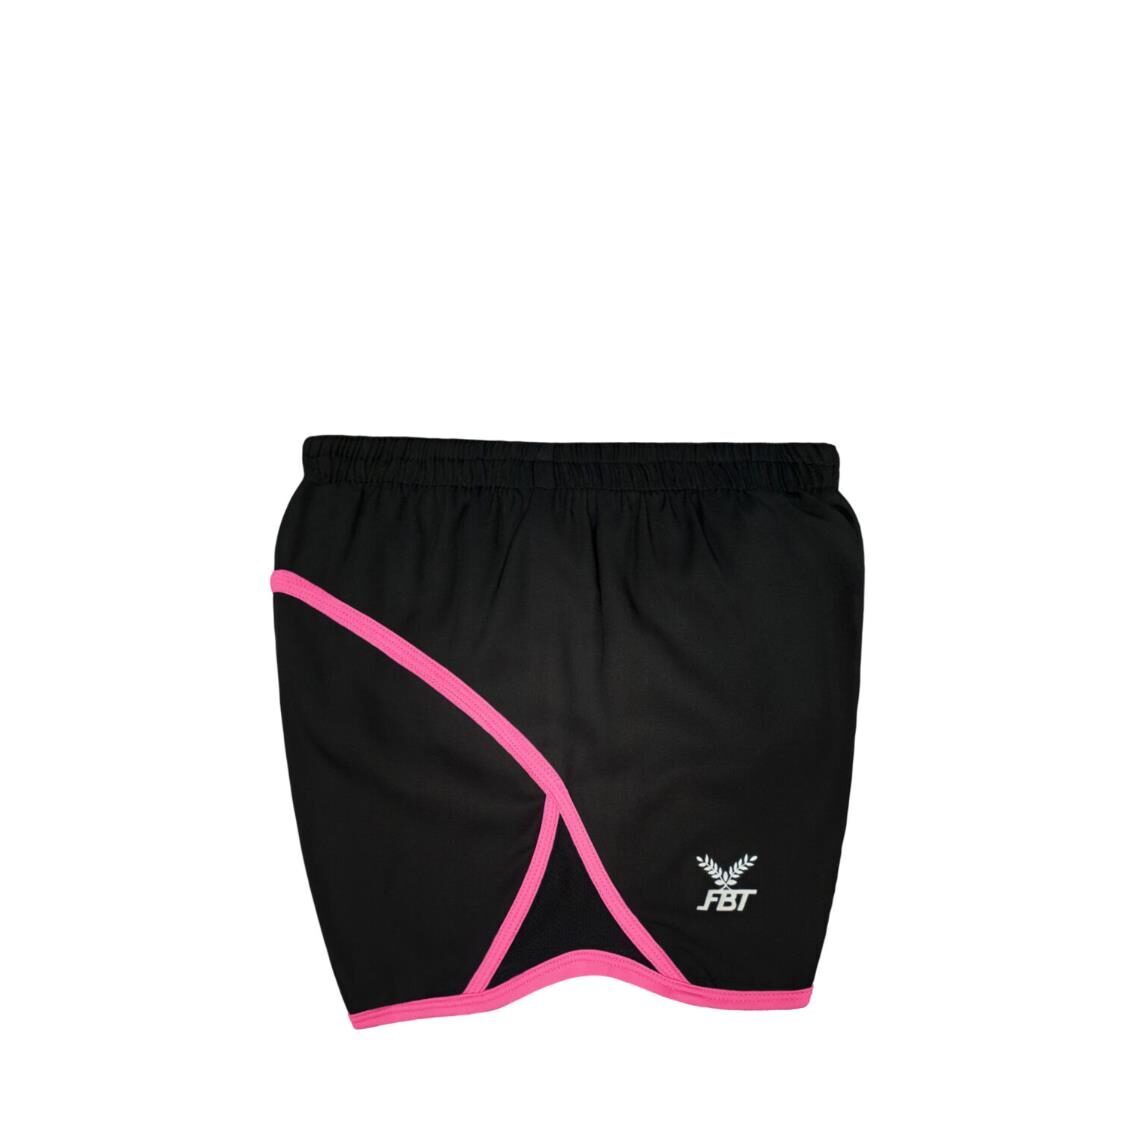 FBT Shorts SA2005 BlackRuby Pink